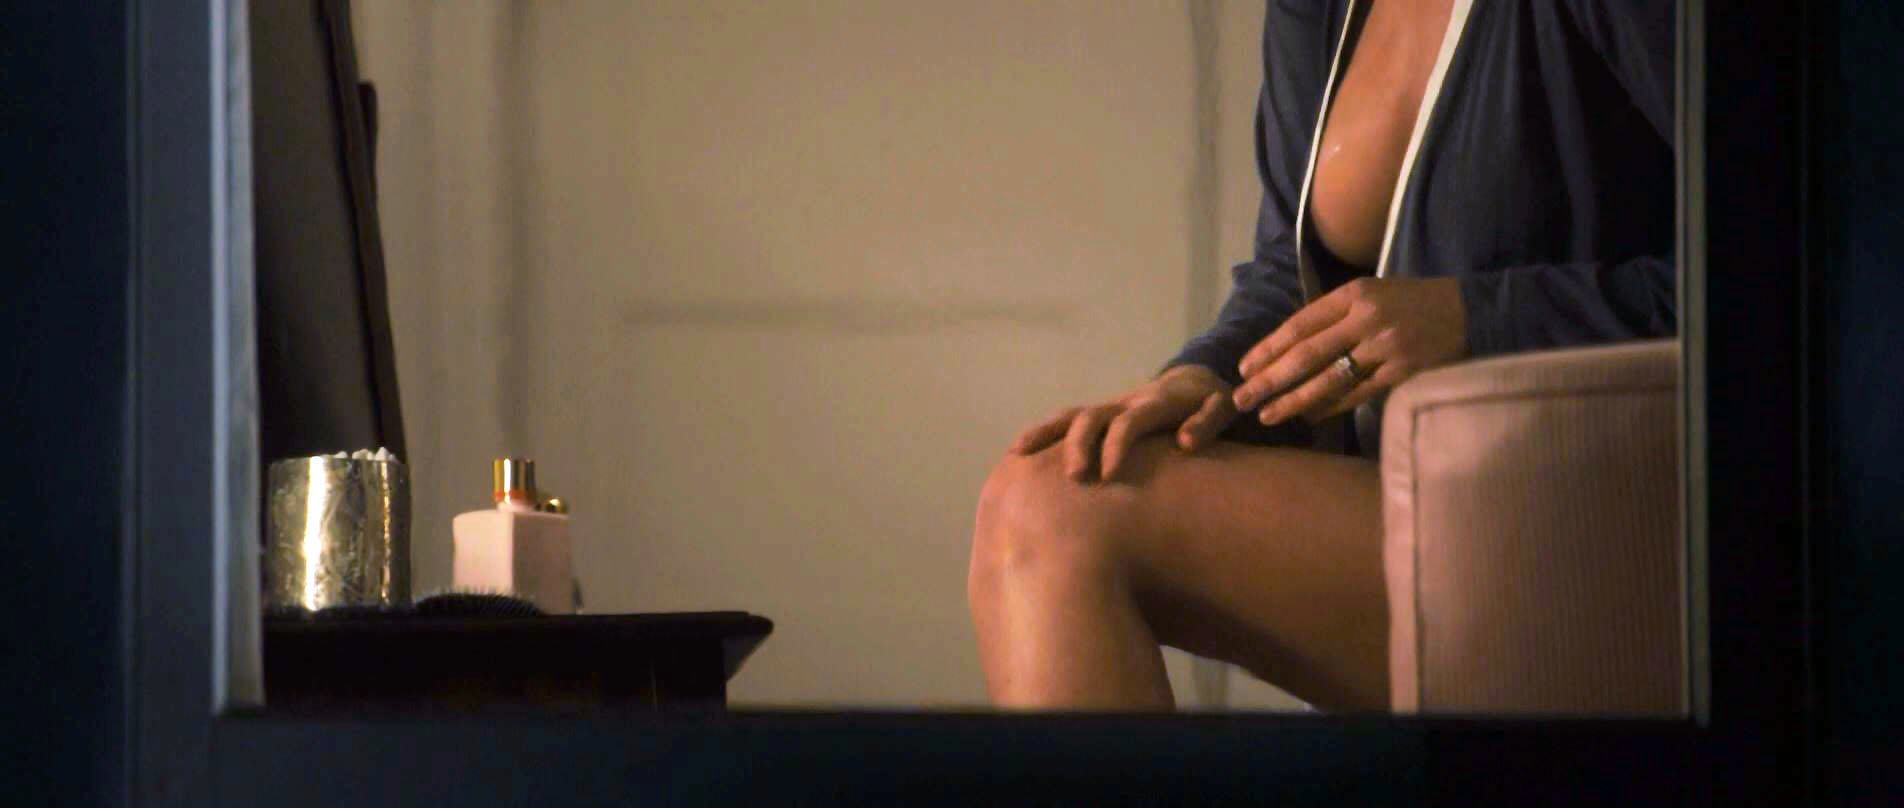 Naked jennifer photo garner Jennifer Garner